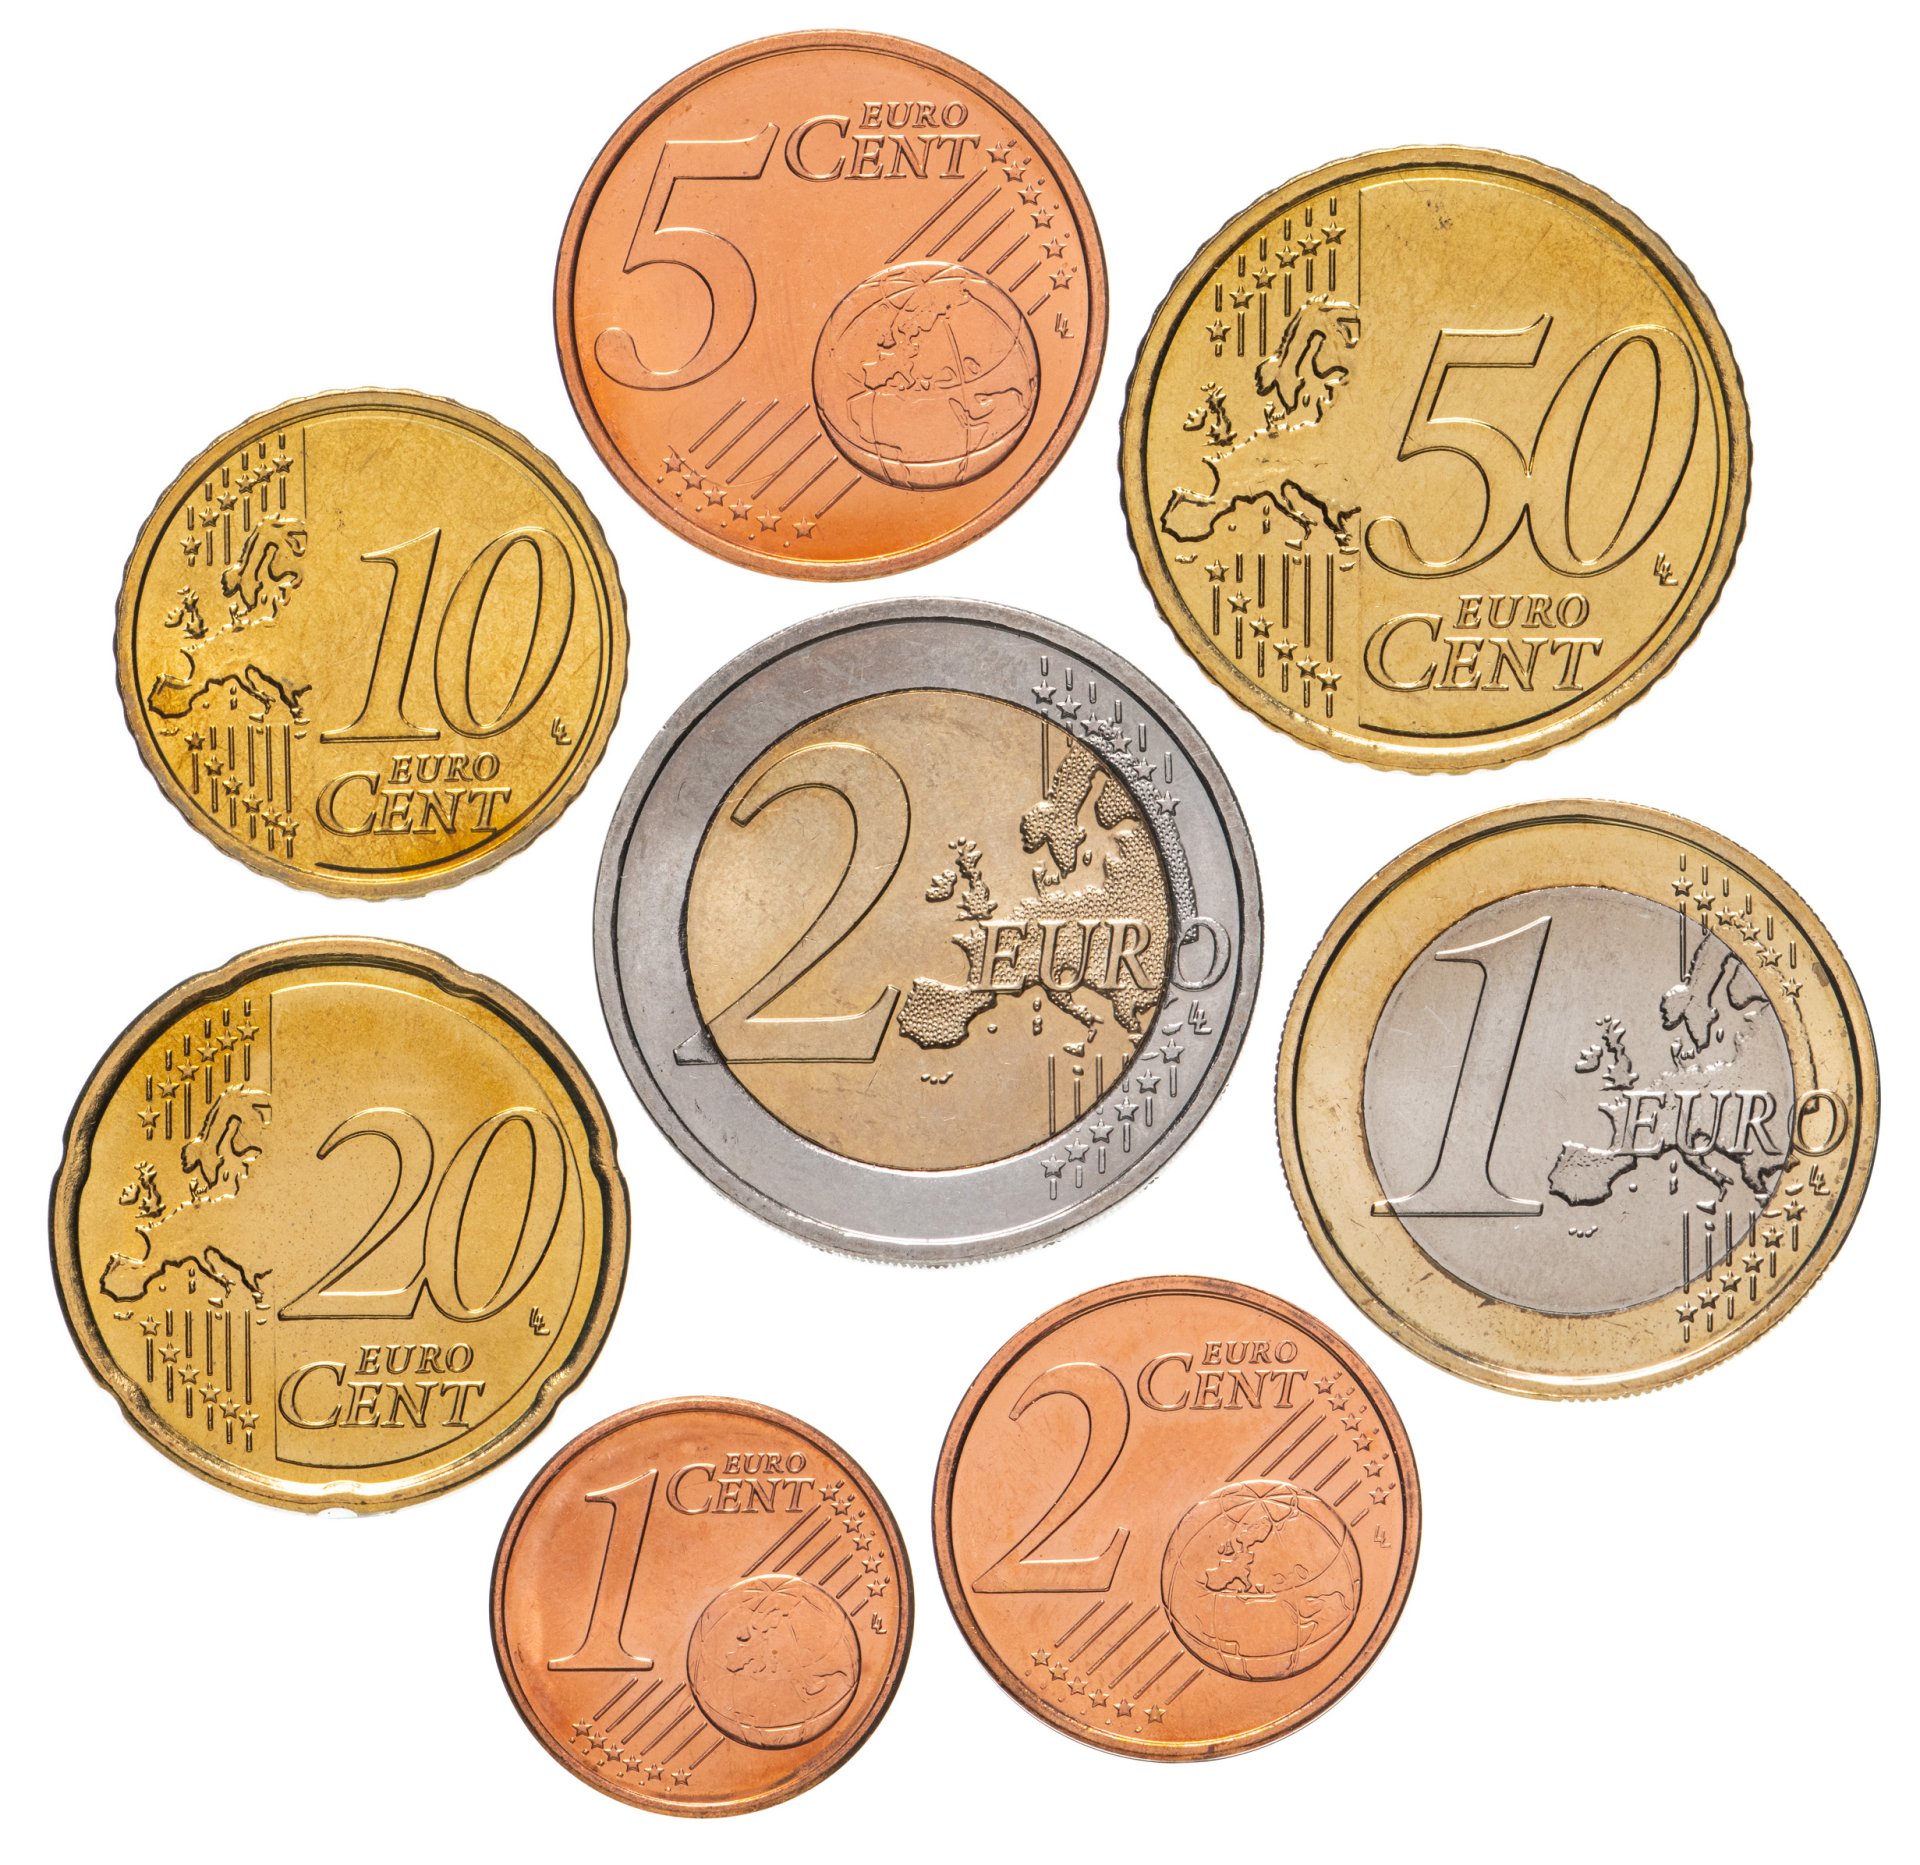 Ирландия стартовый набор евро 2002. Купить набор евро Франция. Купить евро. Евро цена купить. Покупка евро авангард